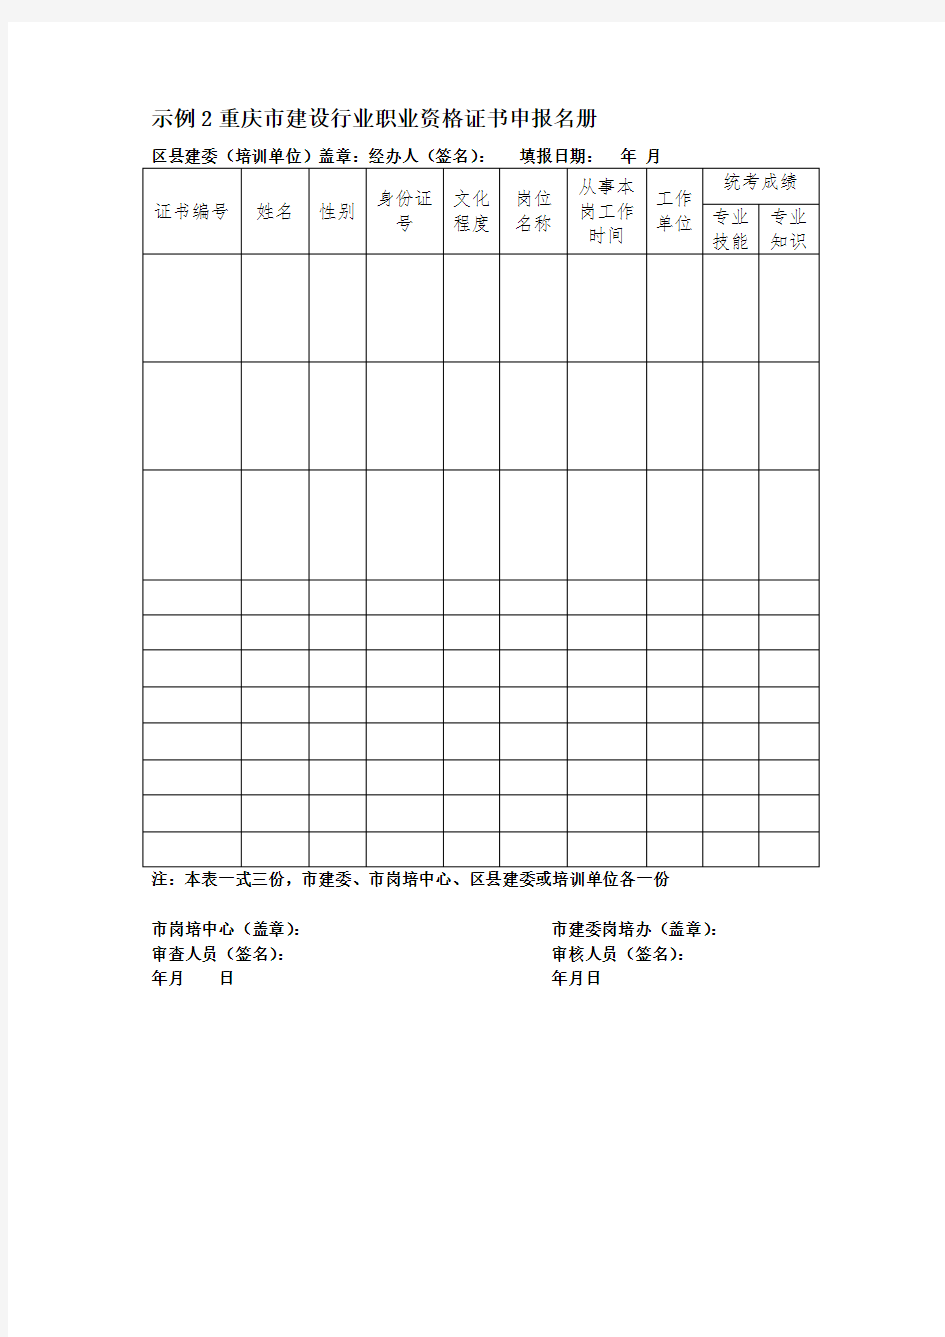 重庆市建设行业专业技术管理人员岗位证书申报名册(空表)